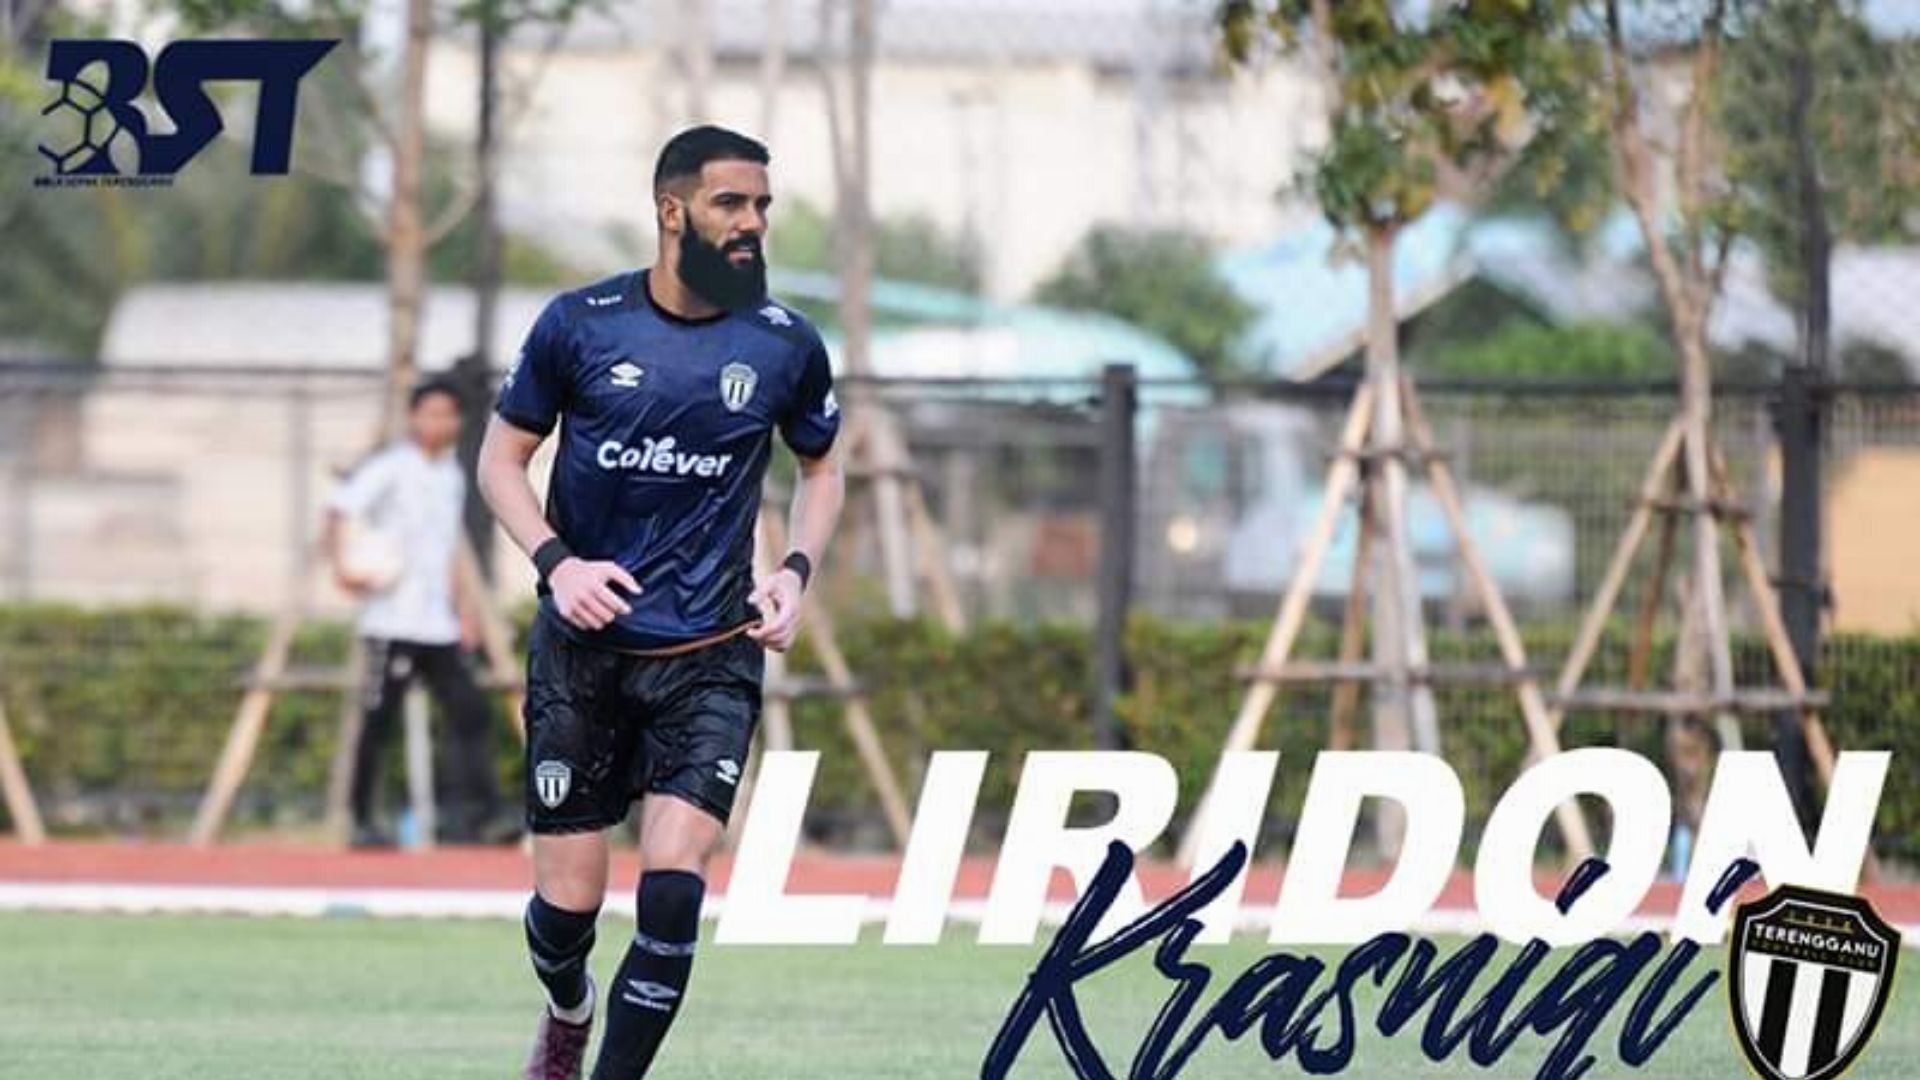 Liridon Bola sepak terengganu Rasmi: Liridon Krasniqi Perkuat Terengganu